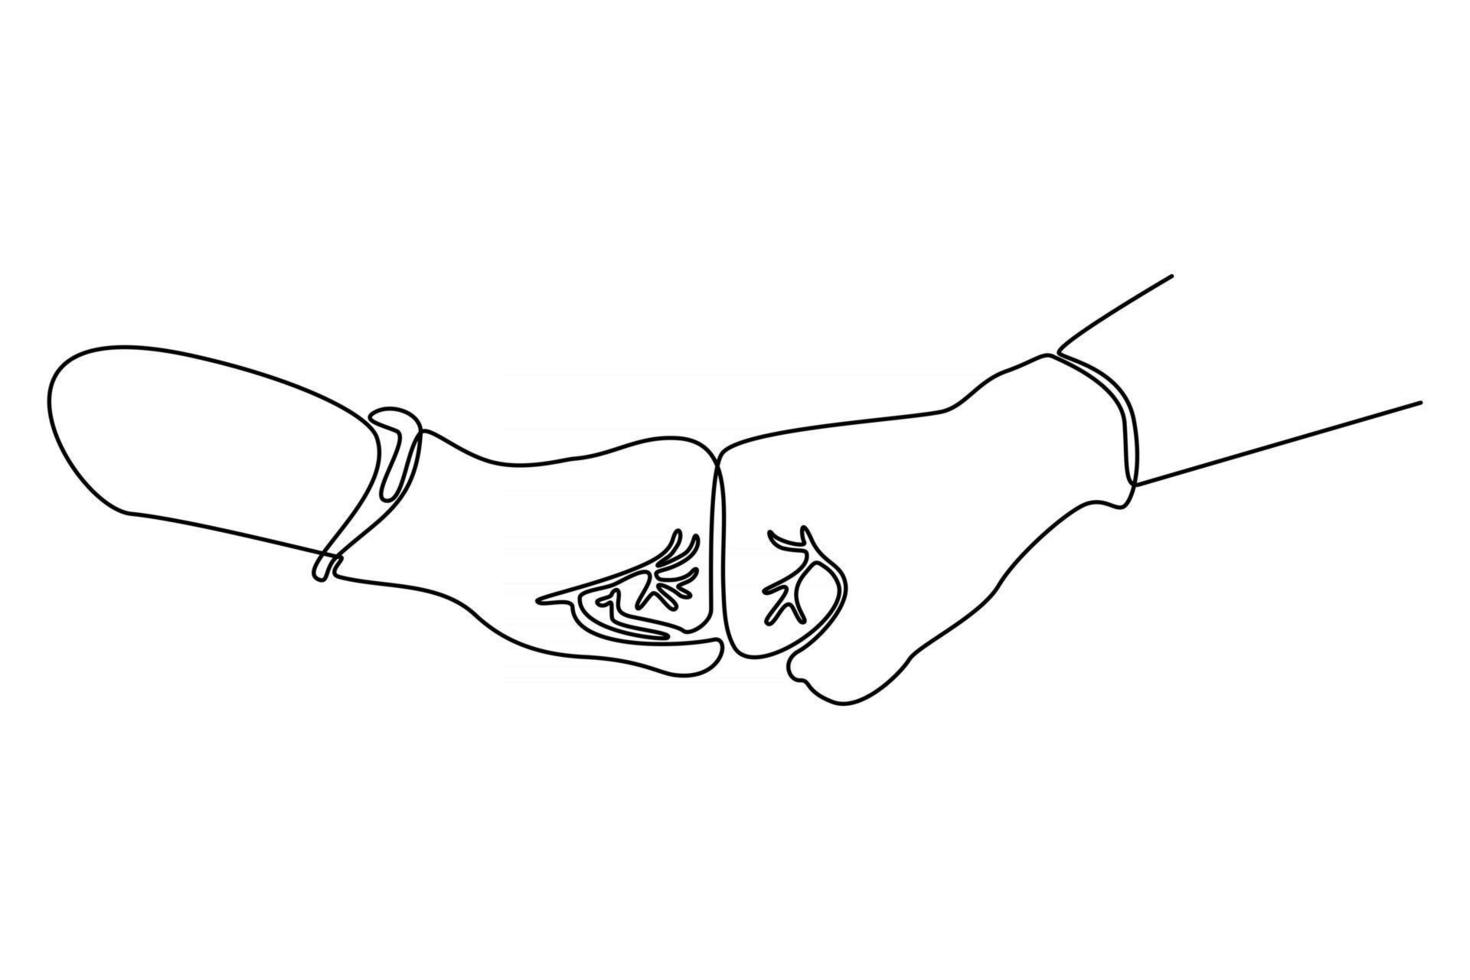 linea continua di due mani con illustrazione vettoriale di guanti protettivi per il virus corona